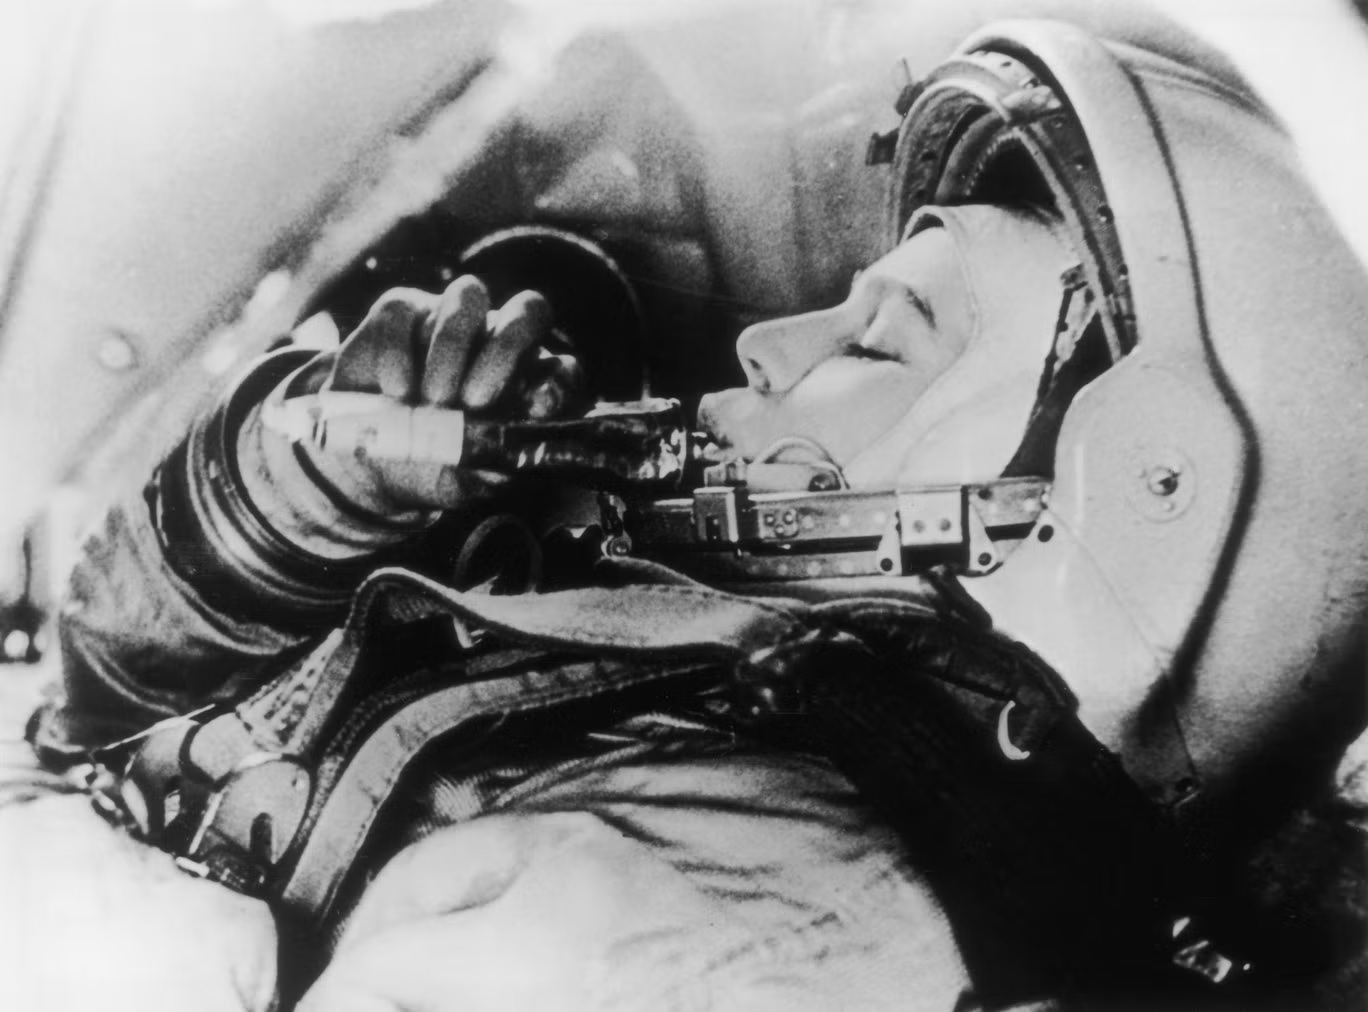 أرادت تيريشكوفا دائماً إظهار الدعم لرواد الفضاء الأخريات (غيتي)